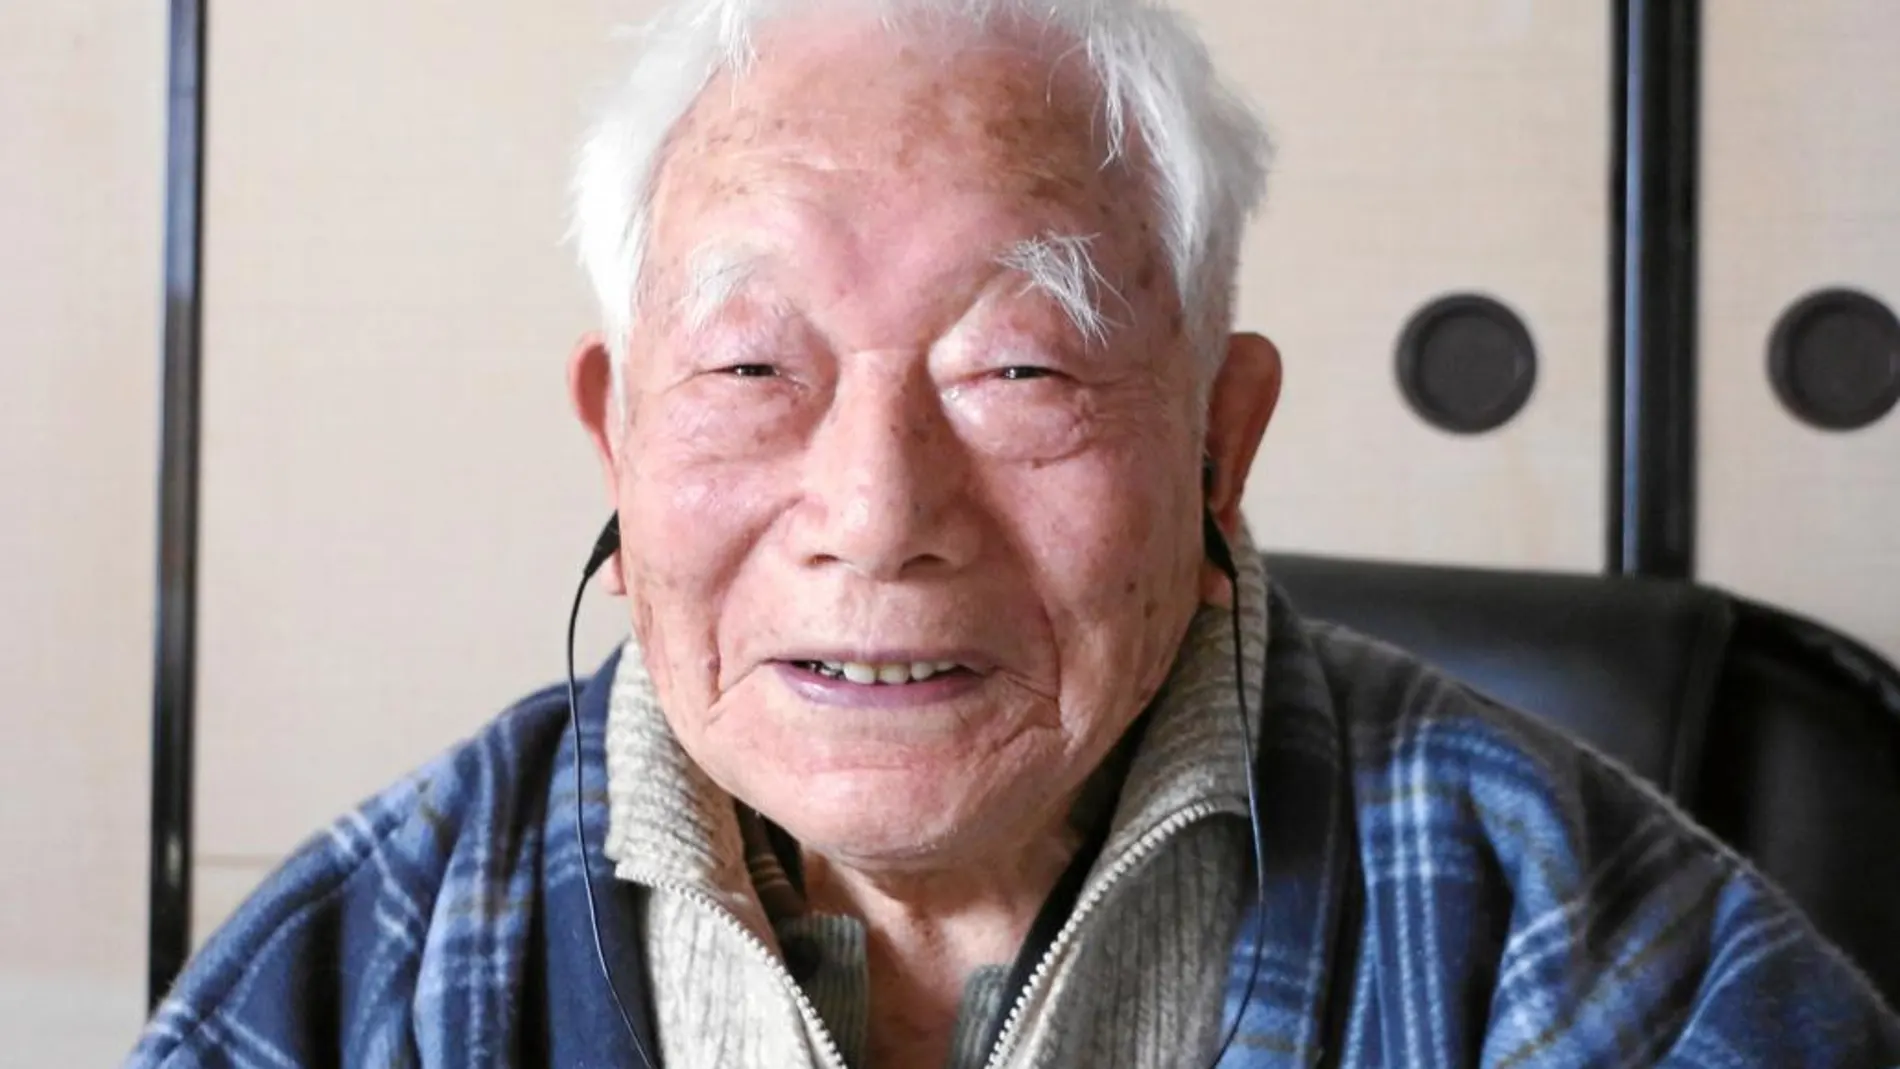 Tomishige Shimizu (100 años). Su cuerpo es más robusto que el de muchos jóvenes gracias a su afición a la pesca. Lo hace en una zona donde el clima es muy severo